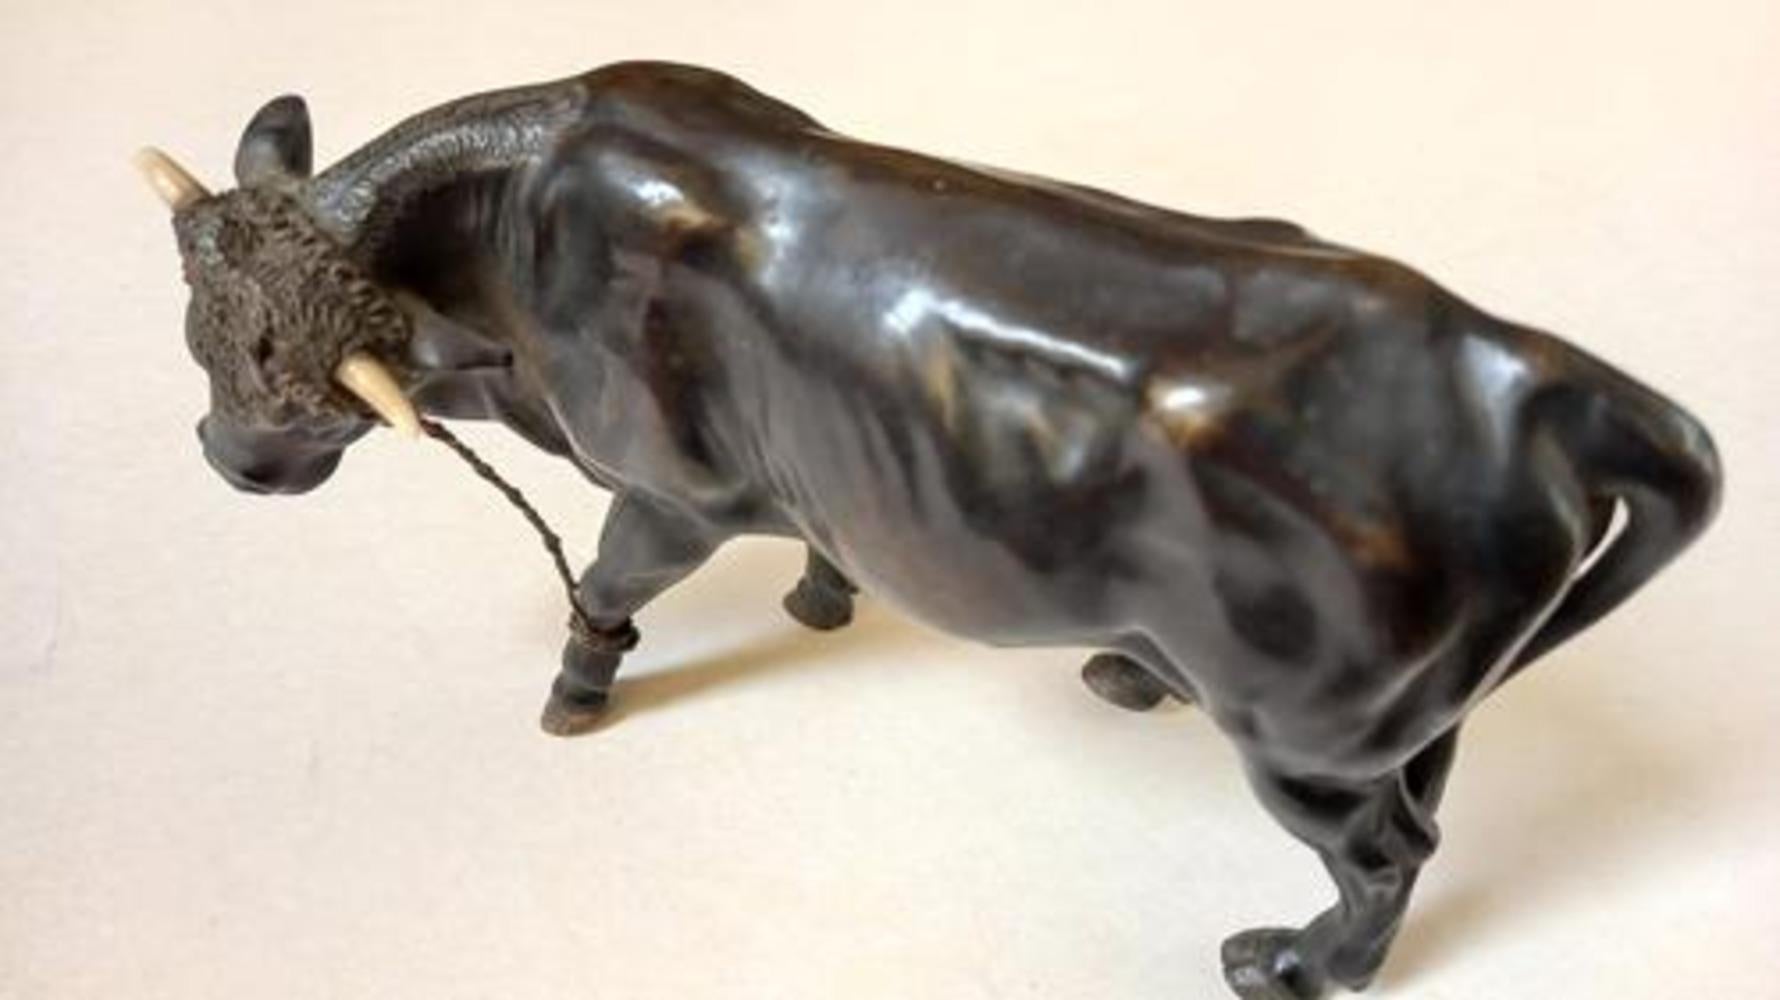 Ein wunderschön modellierter Bronze-Stier in klassischer Form A.

Das Stück misst ungefähr 15 cm x 8,5 cm x 5 cm oder 6 Zoll x 8,5 Zoll x 2 Zoll.